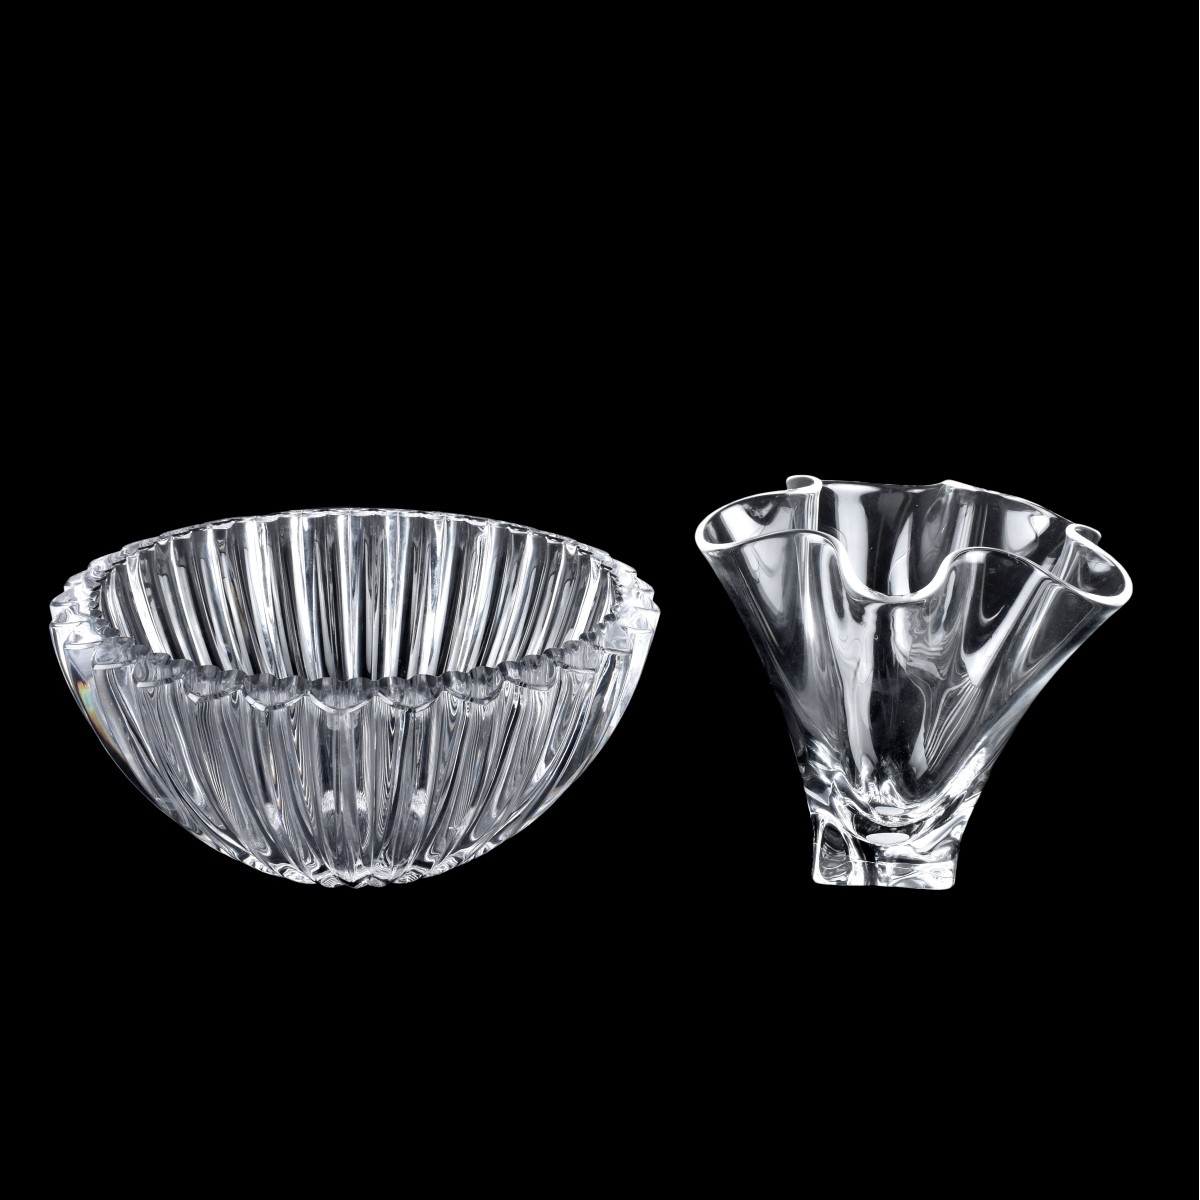 Two (2) Vintage Crystal Tableware